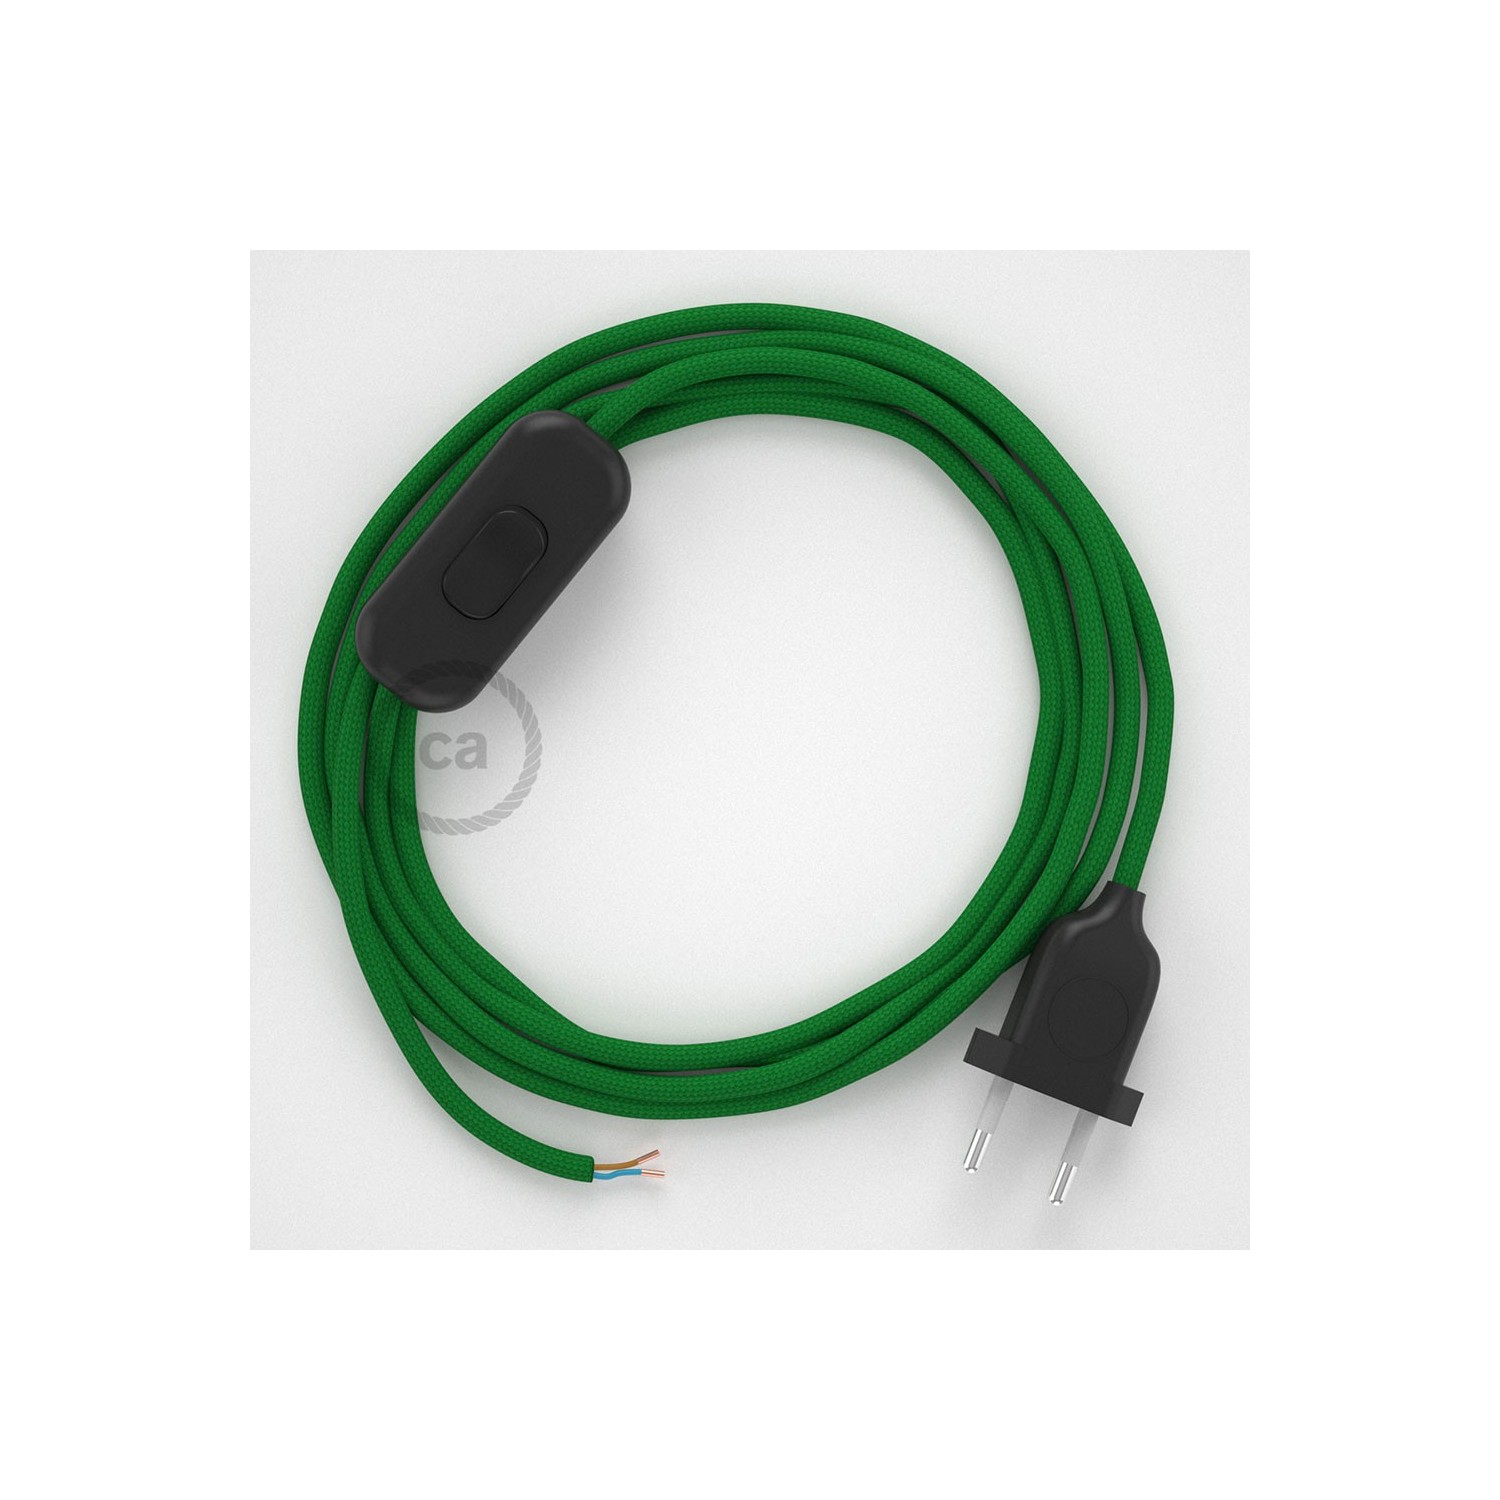 Sladdställ, RM06 Grön Viskos 1,80 m. Välj färg på strömbrytare och kontakt